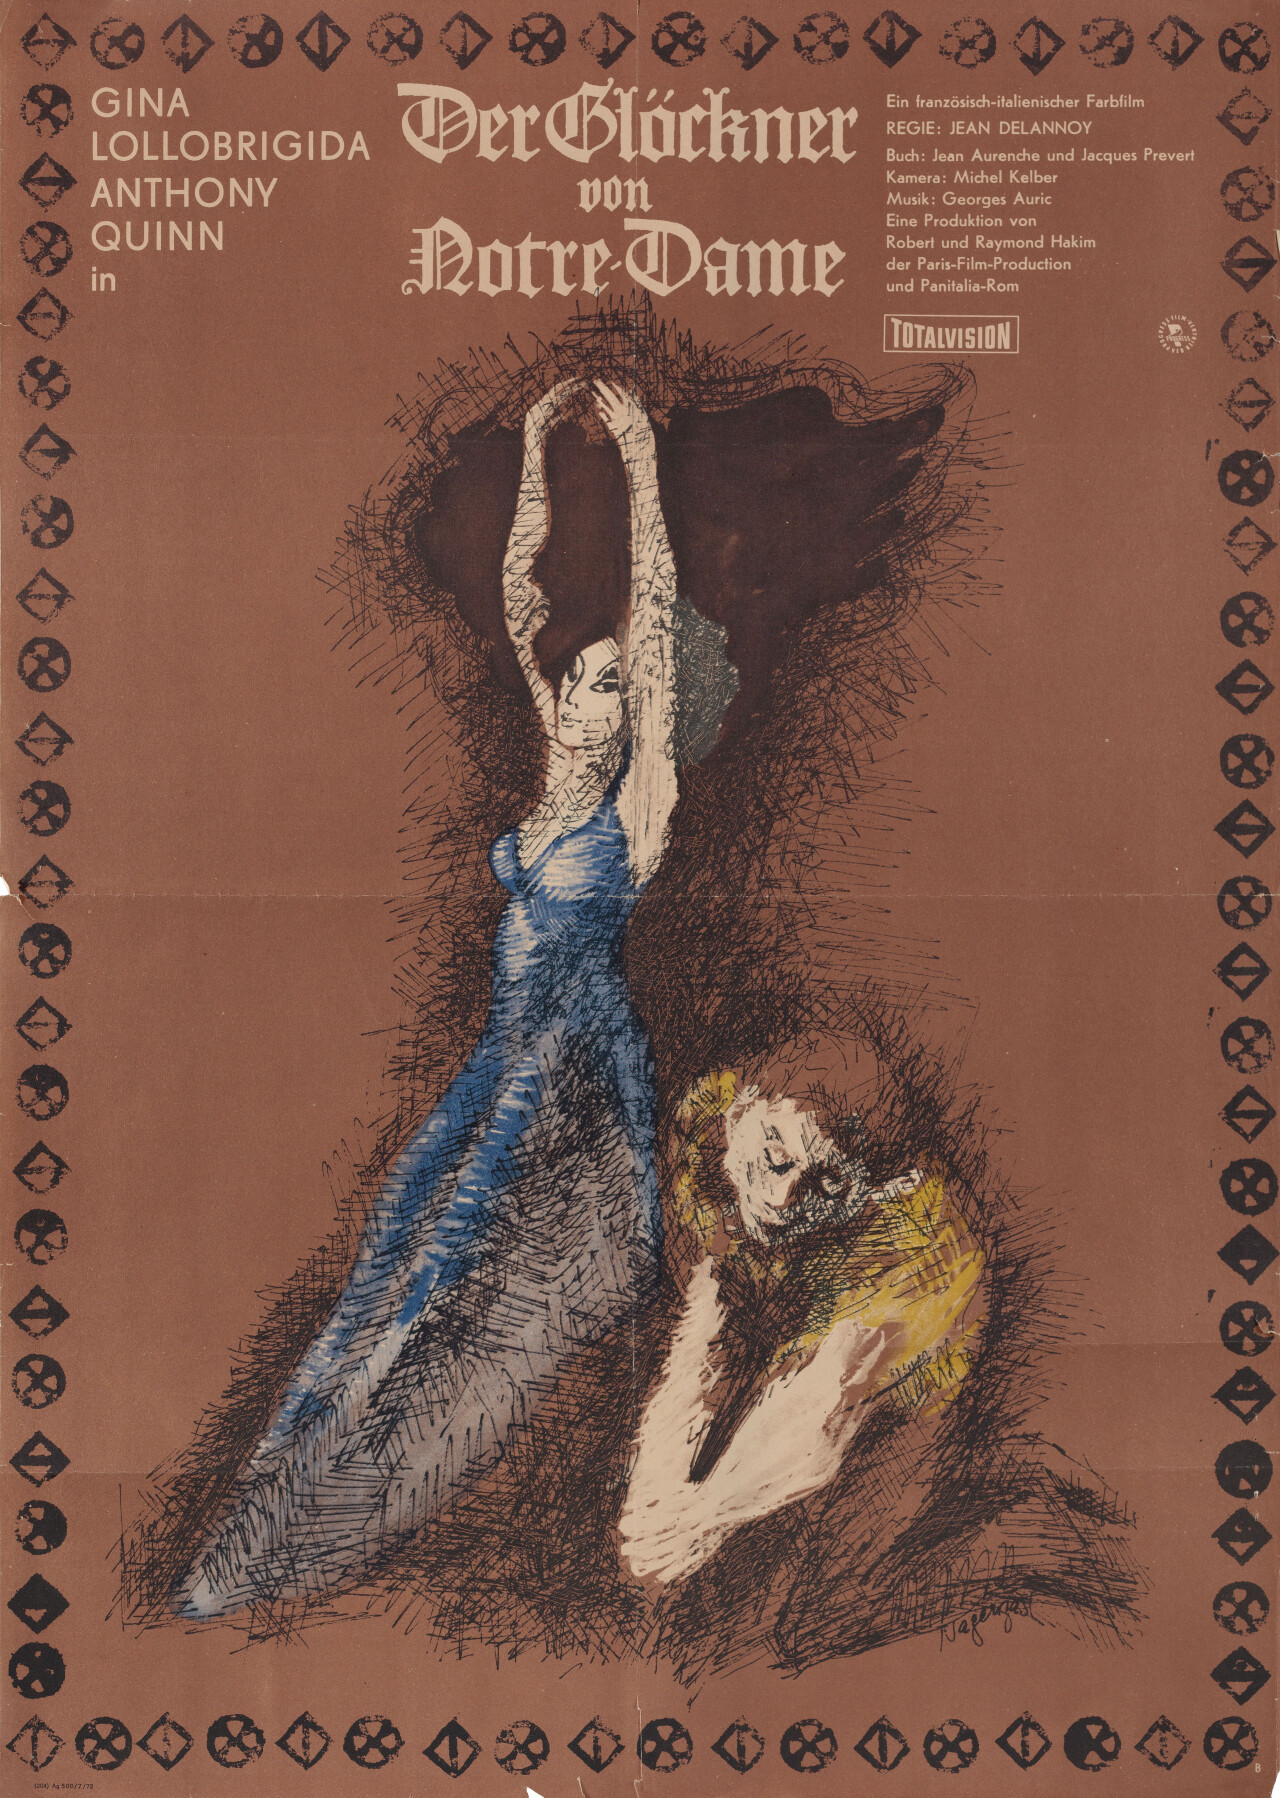 Собор Парижской Богоматери (The Hunchback of Notre Dame, 1956), режиссёр Жан Делануа, East немецкий (ФРГ) постер к фильму, автор Нагенаст (ужасы, 1972 год)